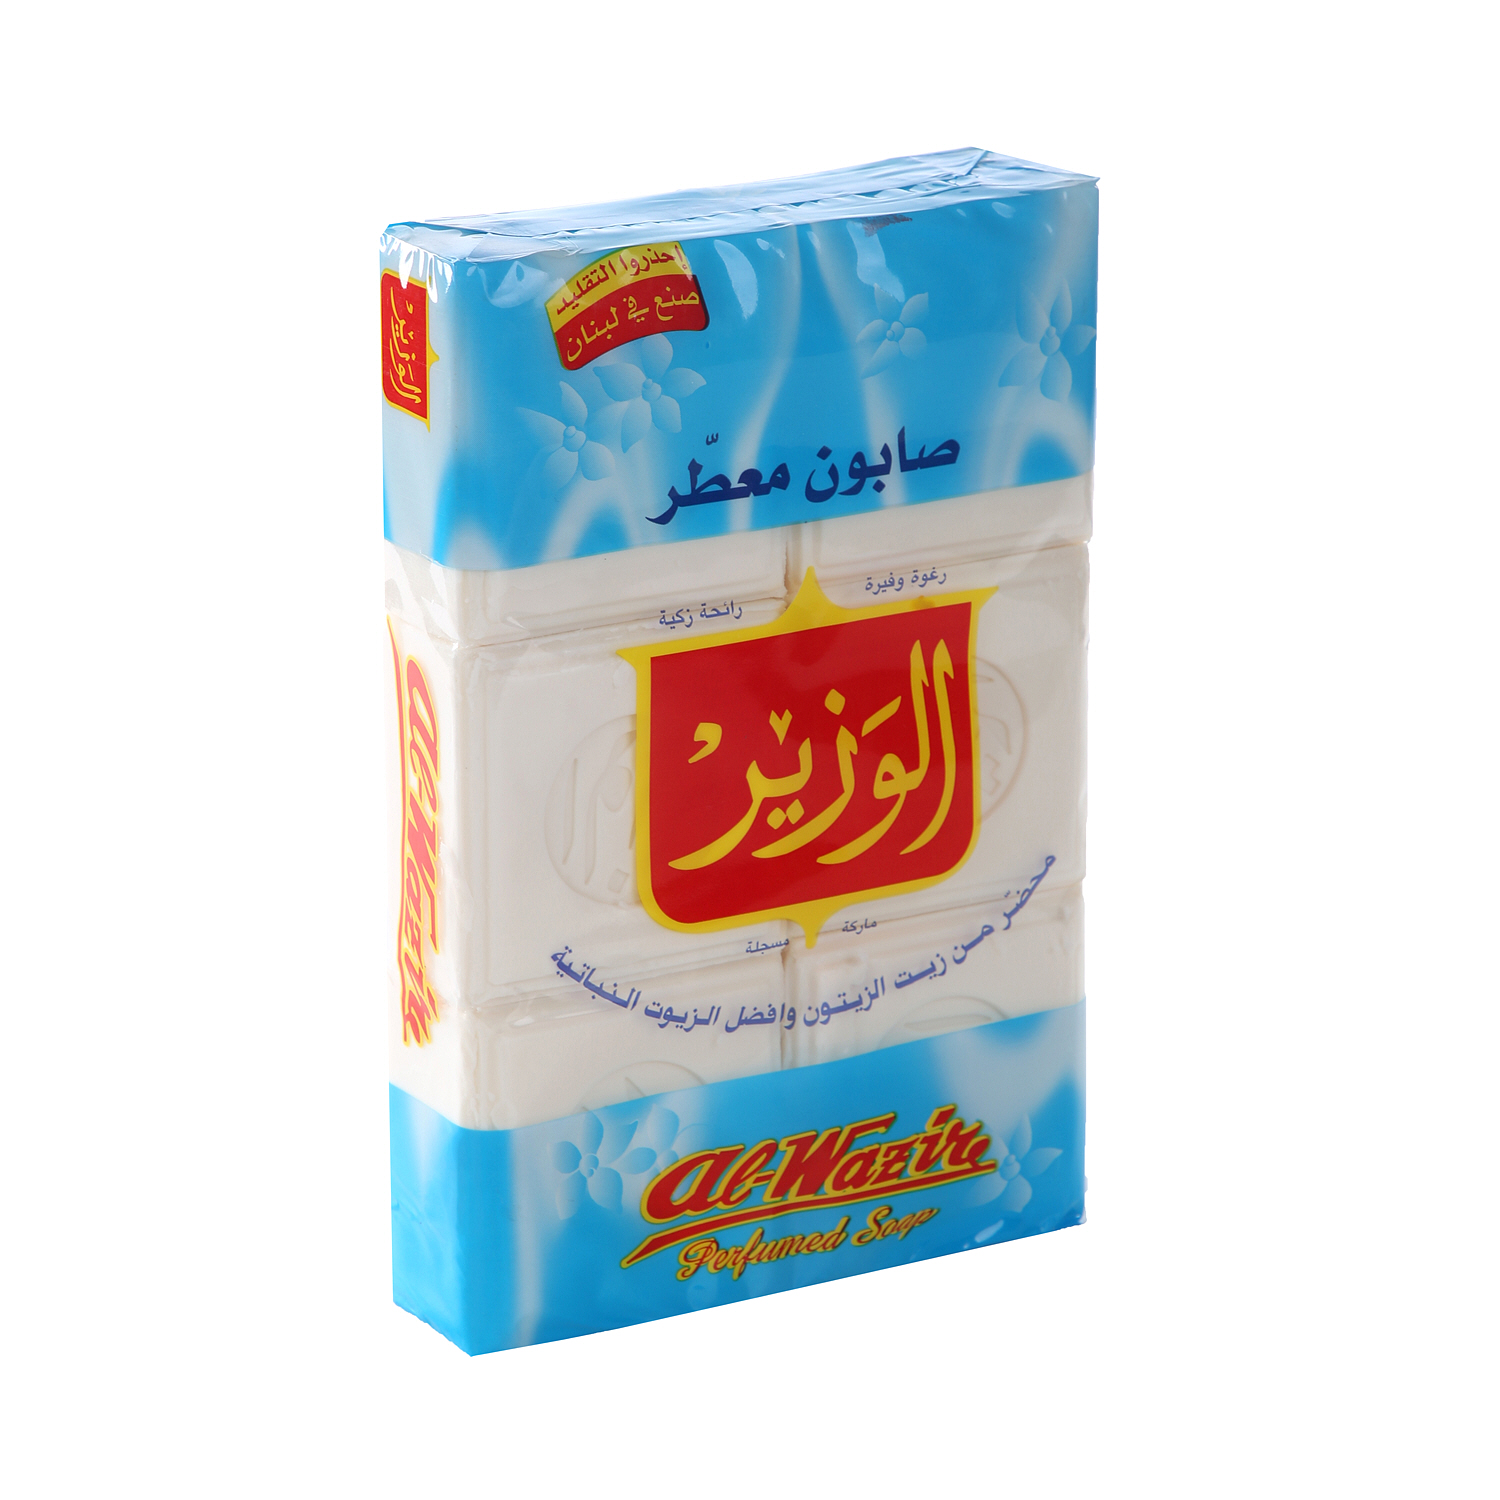 Al Wazir Soap Bars 900 g × 6 Pack